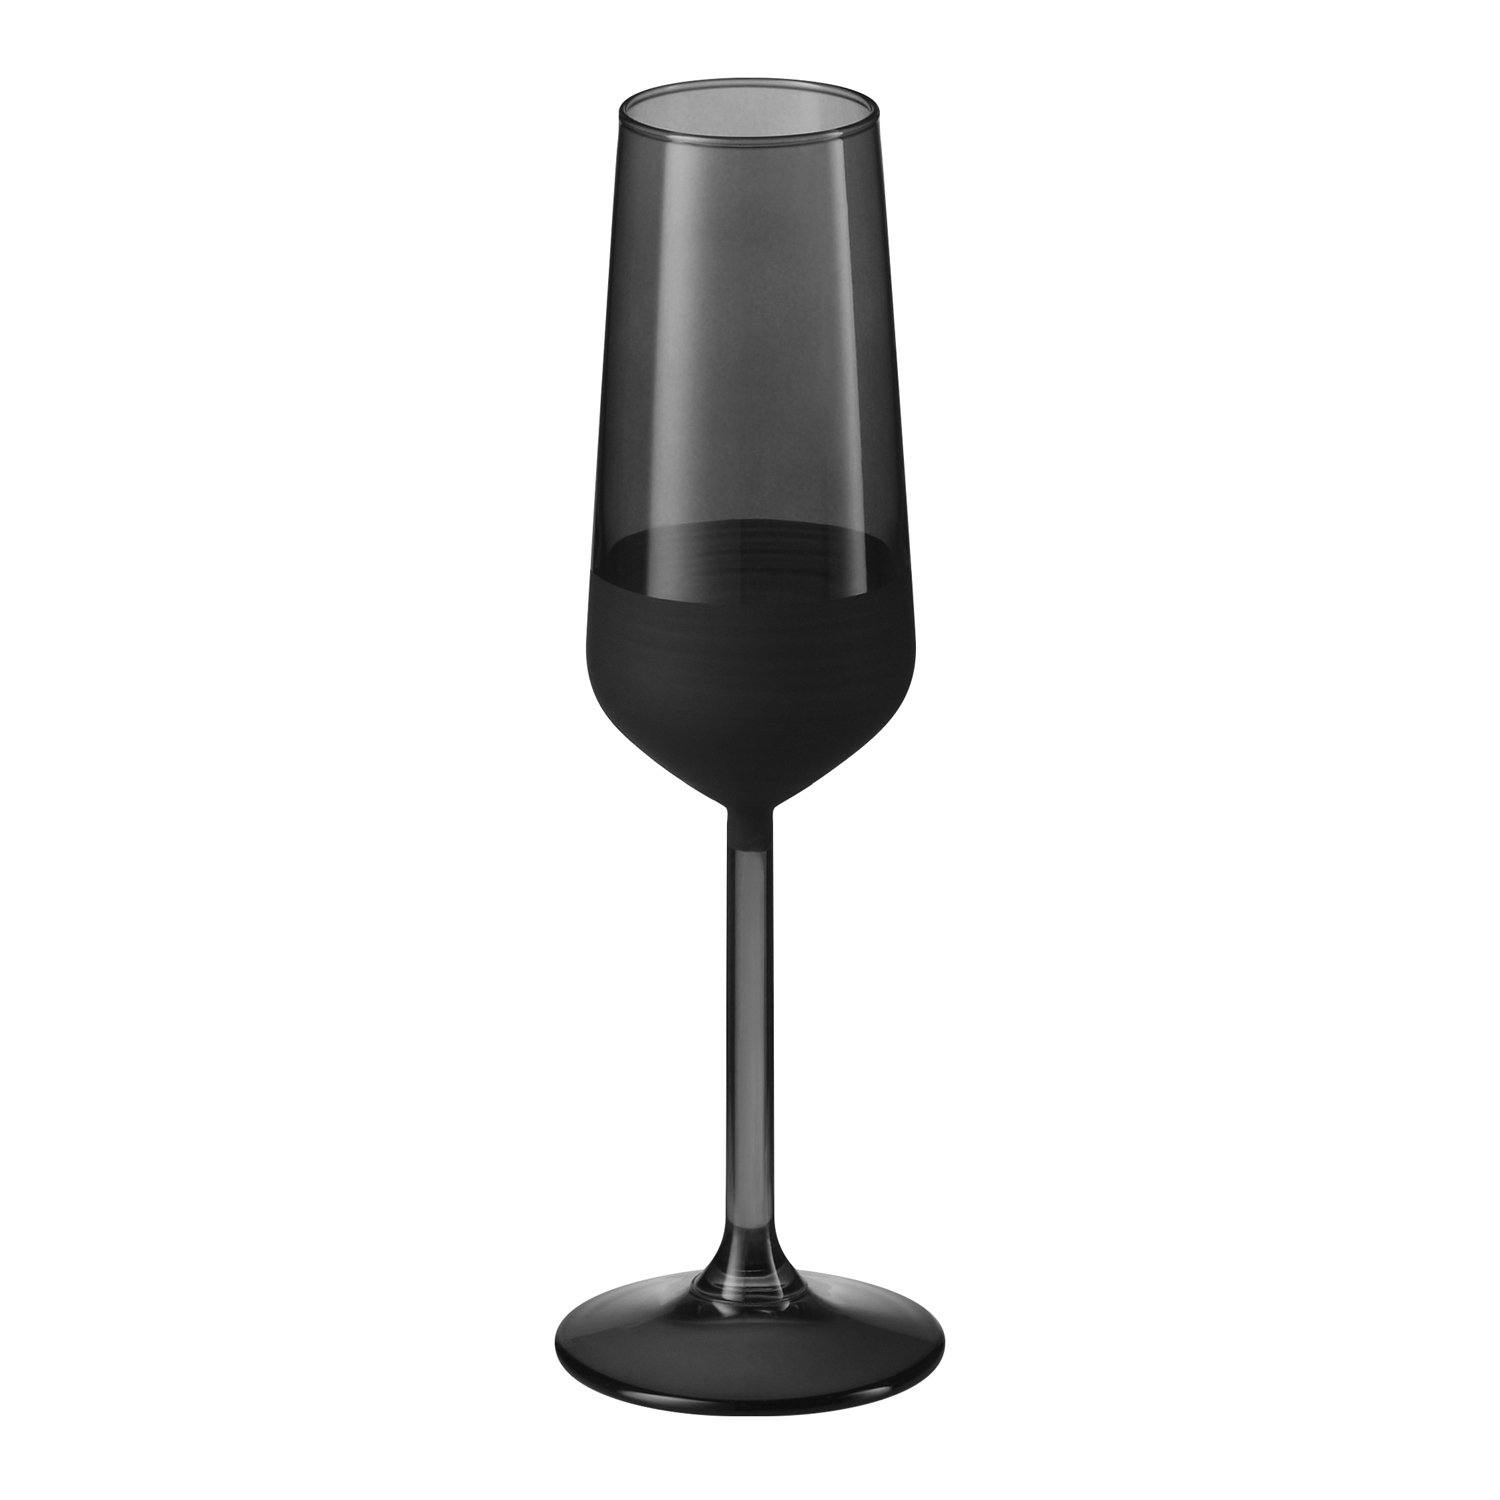 Артикул: A73079.010 — Бокал для шампанского, Black Edition, 195 ml, черный